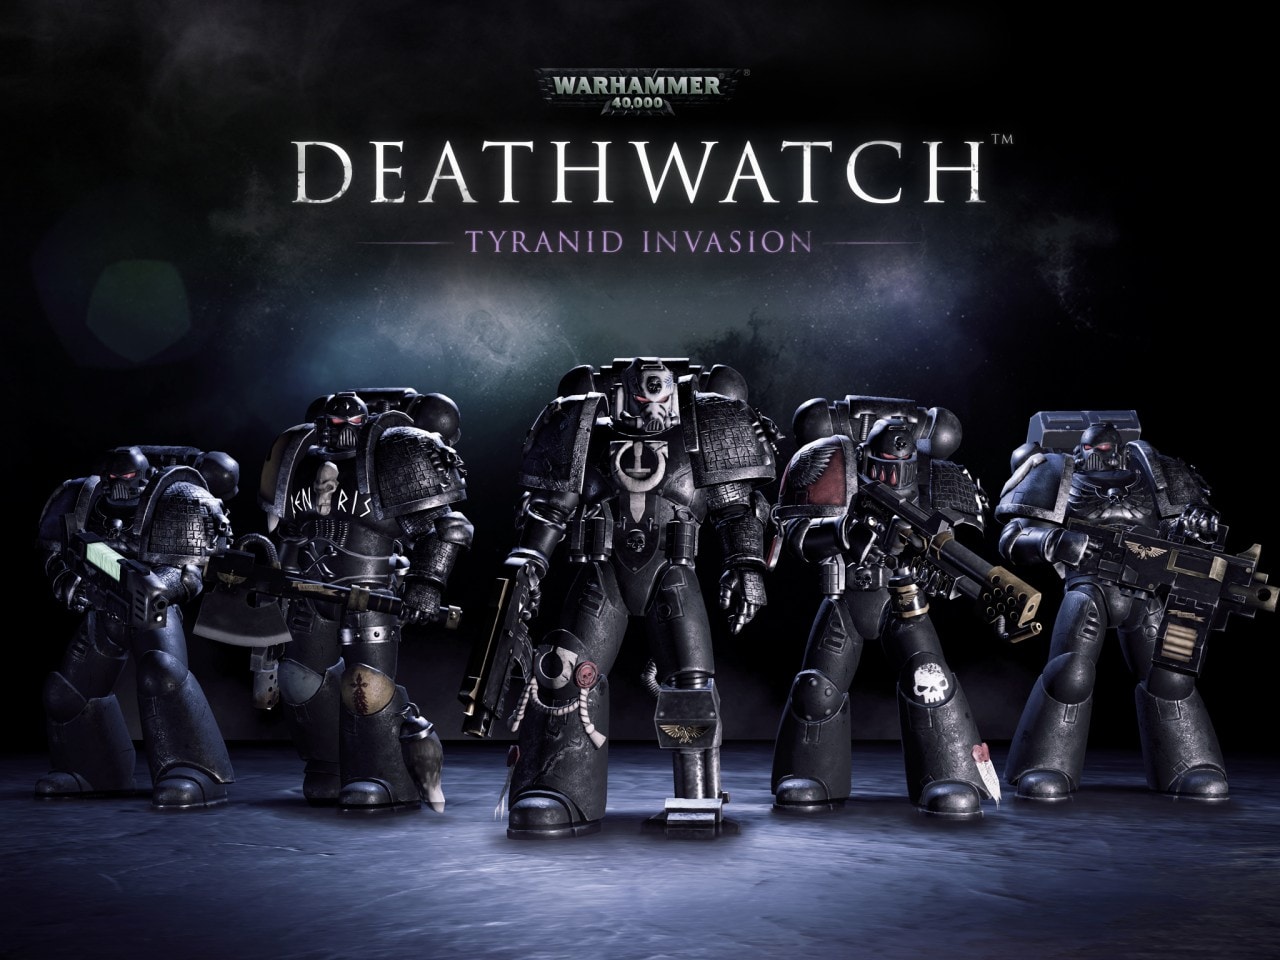 Warhammer 40,000 Deathwatch: scacciamo i tiranidi dalla galassia! (recensione)